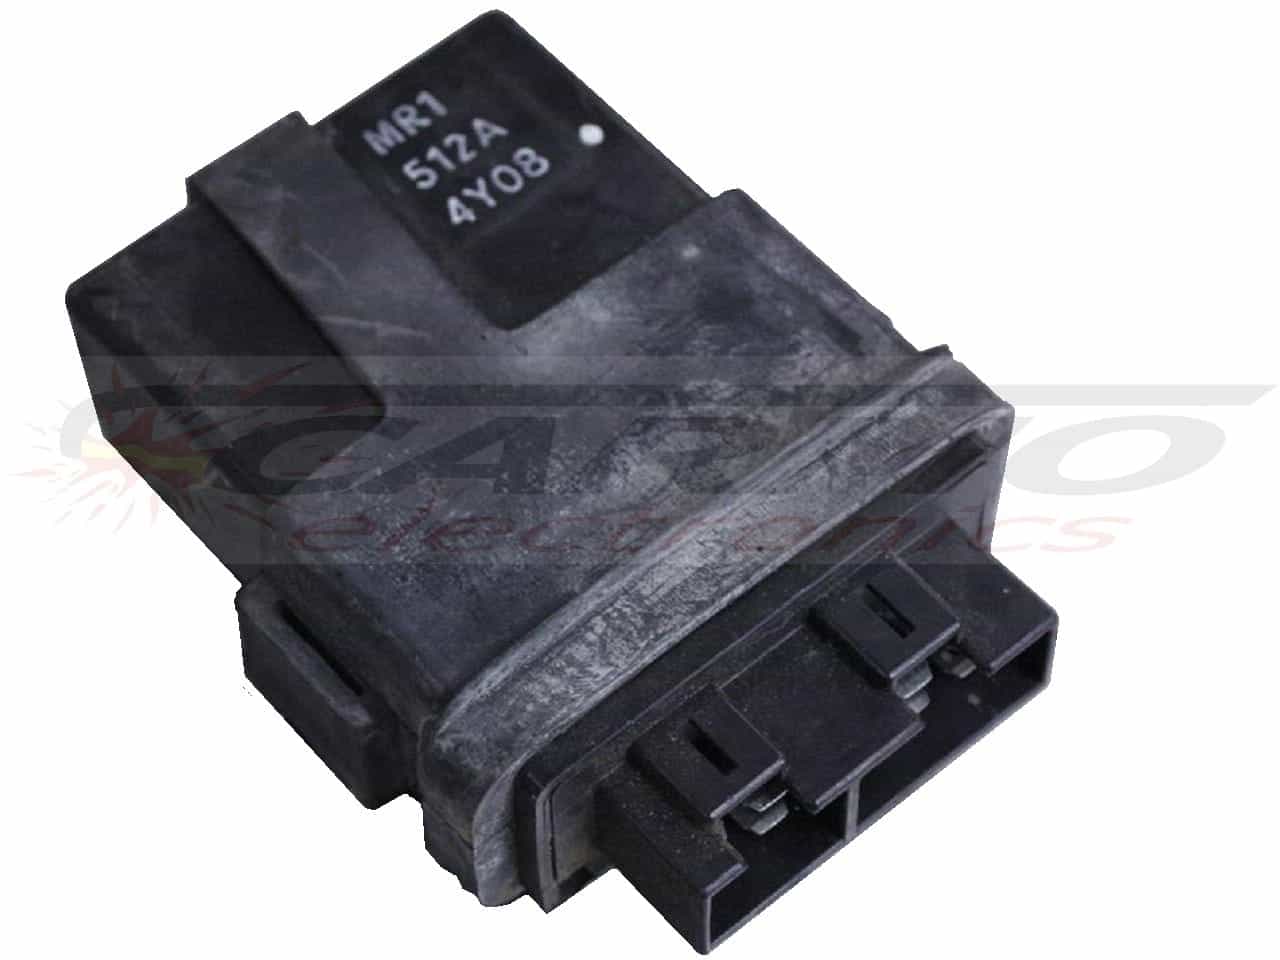 VLX400 TCI CDI dispositif de commande boîte noire (MR1 512A)